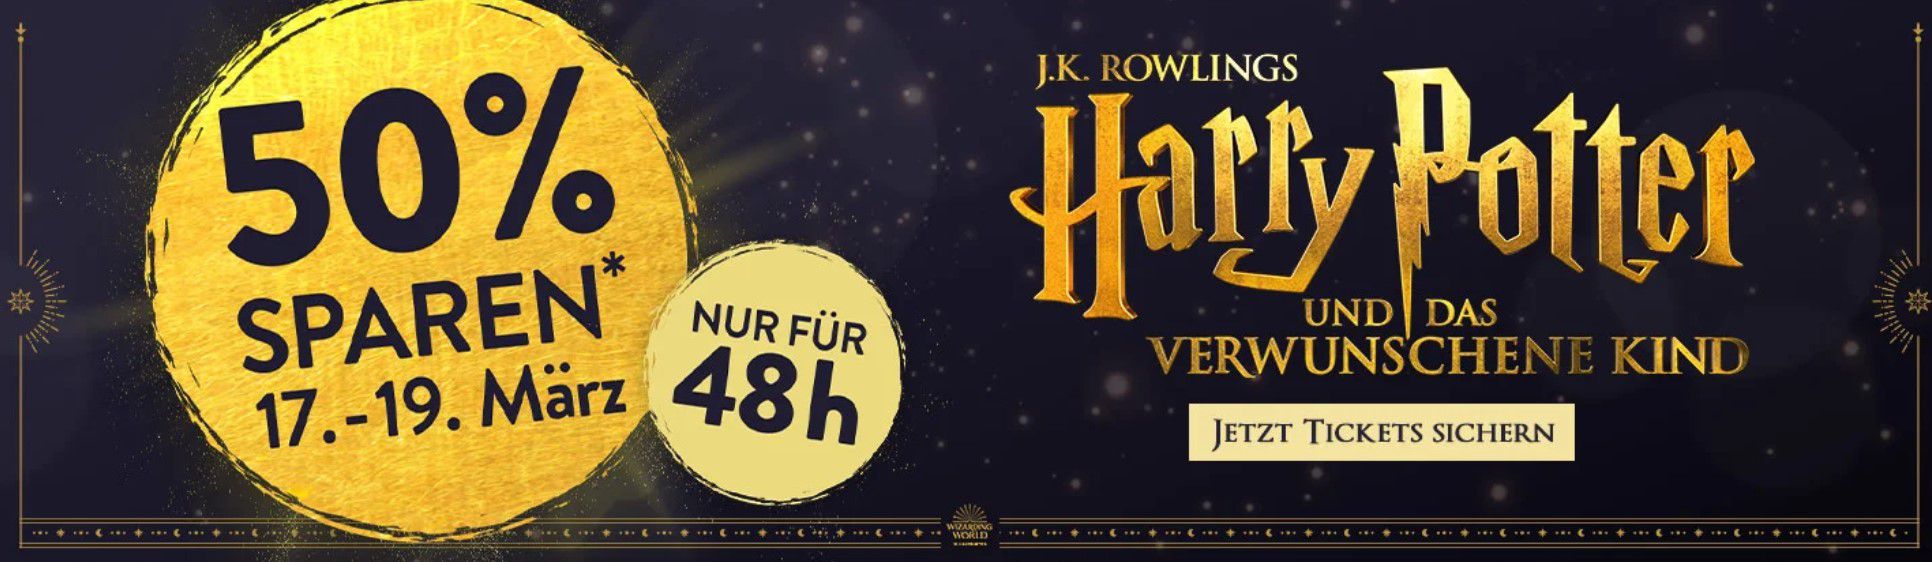 Harry Potter und das verwunschene Kind in Hamburg   Tickets mit 50% Rabatt